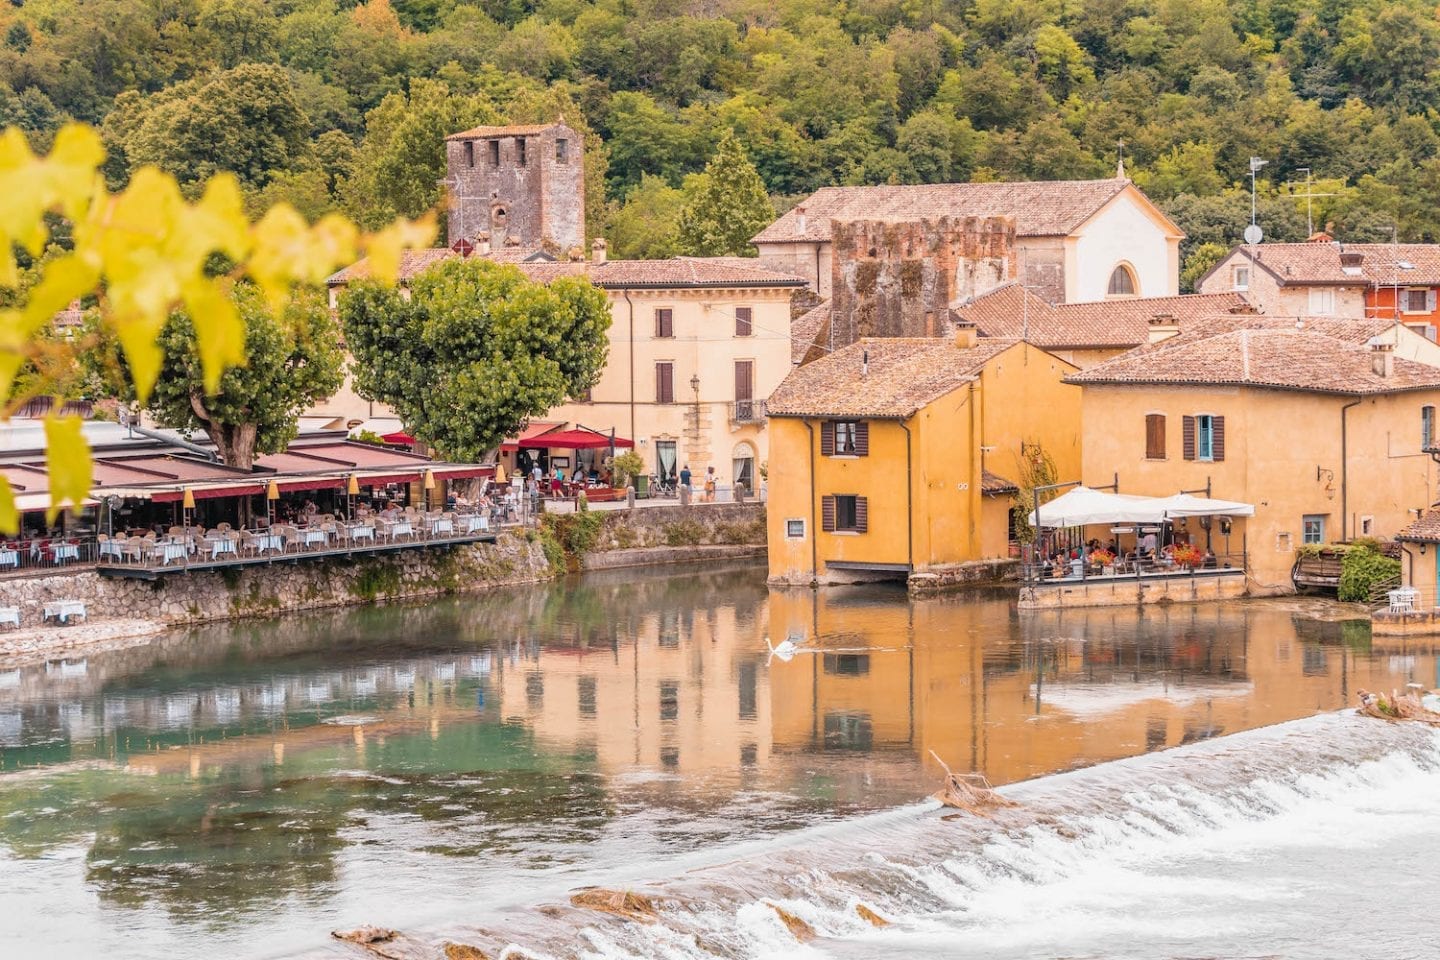 Borghetto sul Mincio: Explore One of Italy’s Prettiest Villages